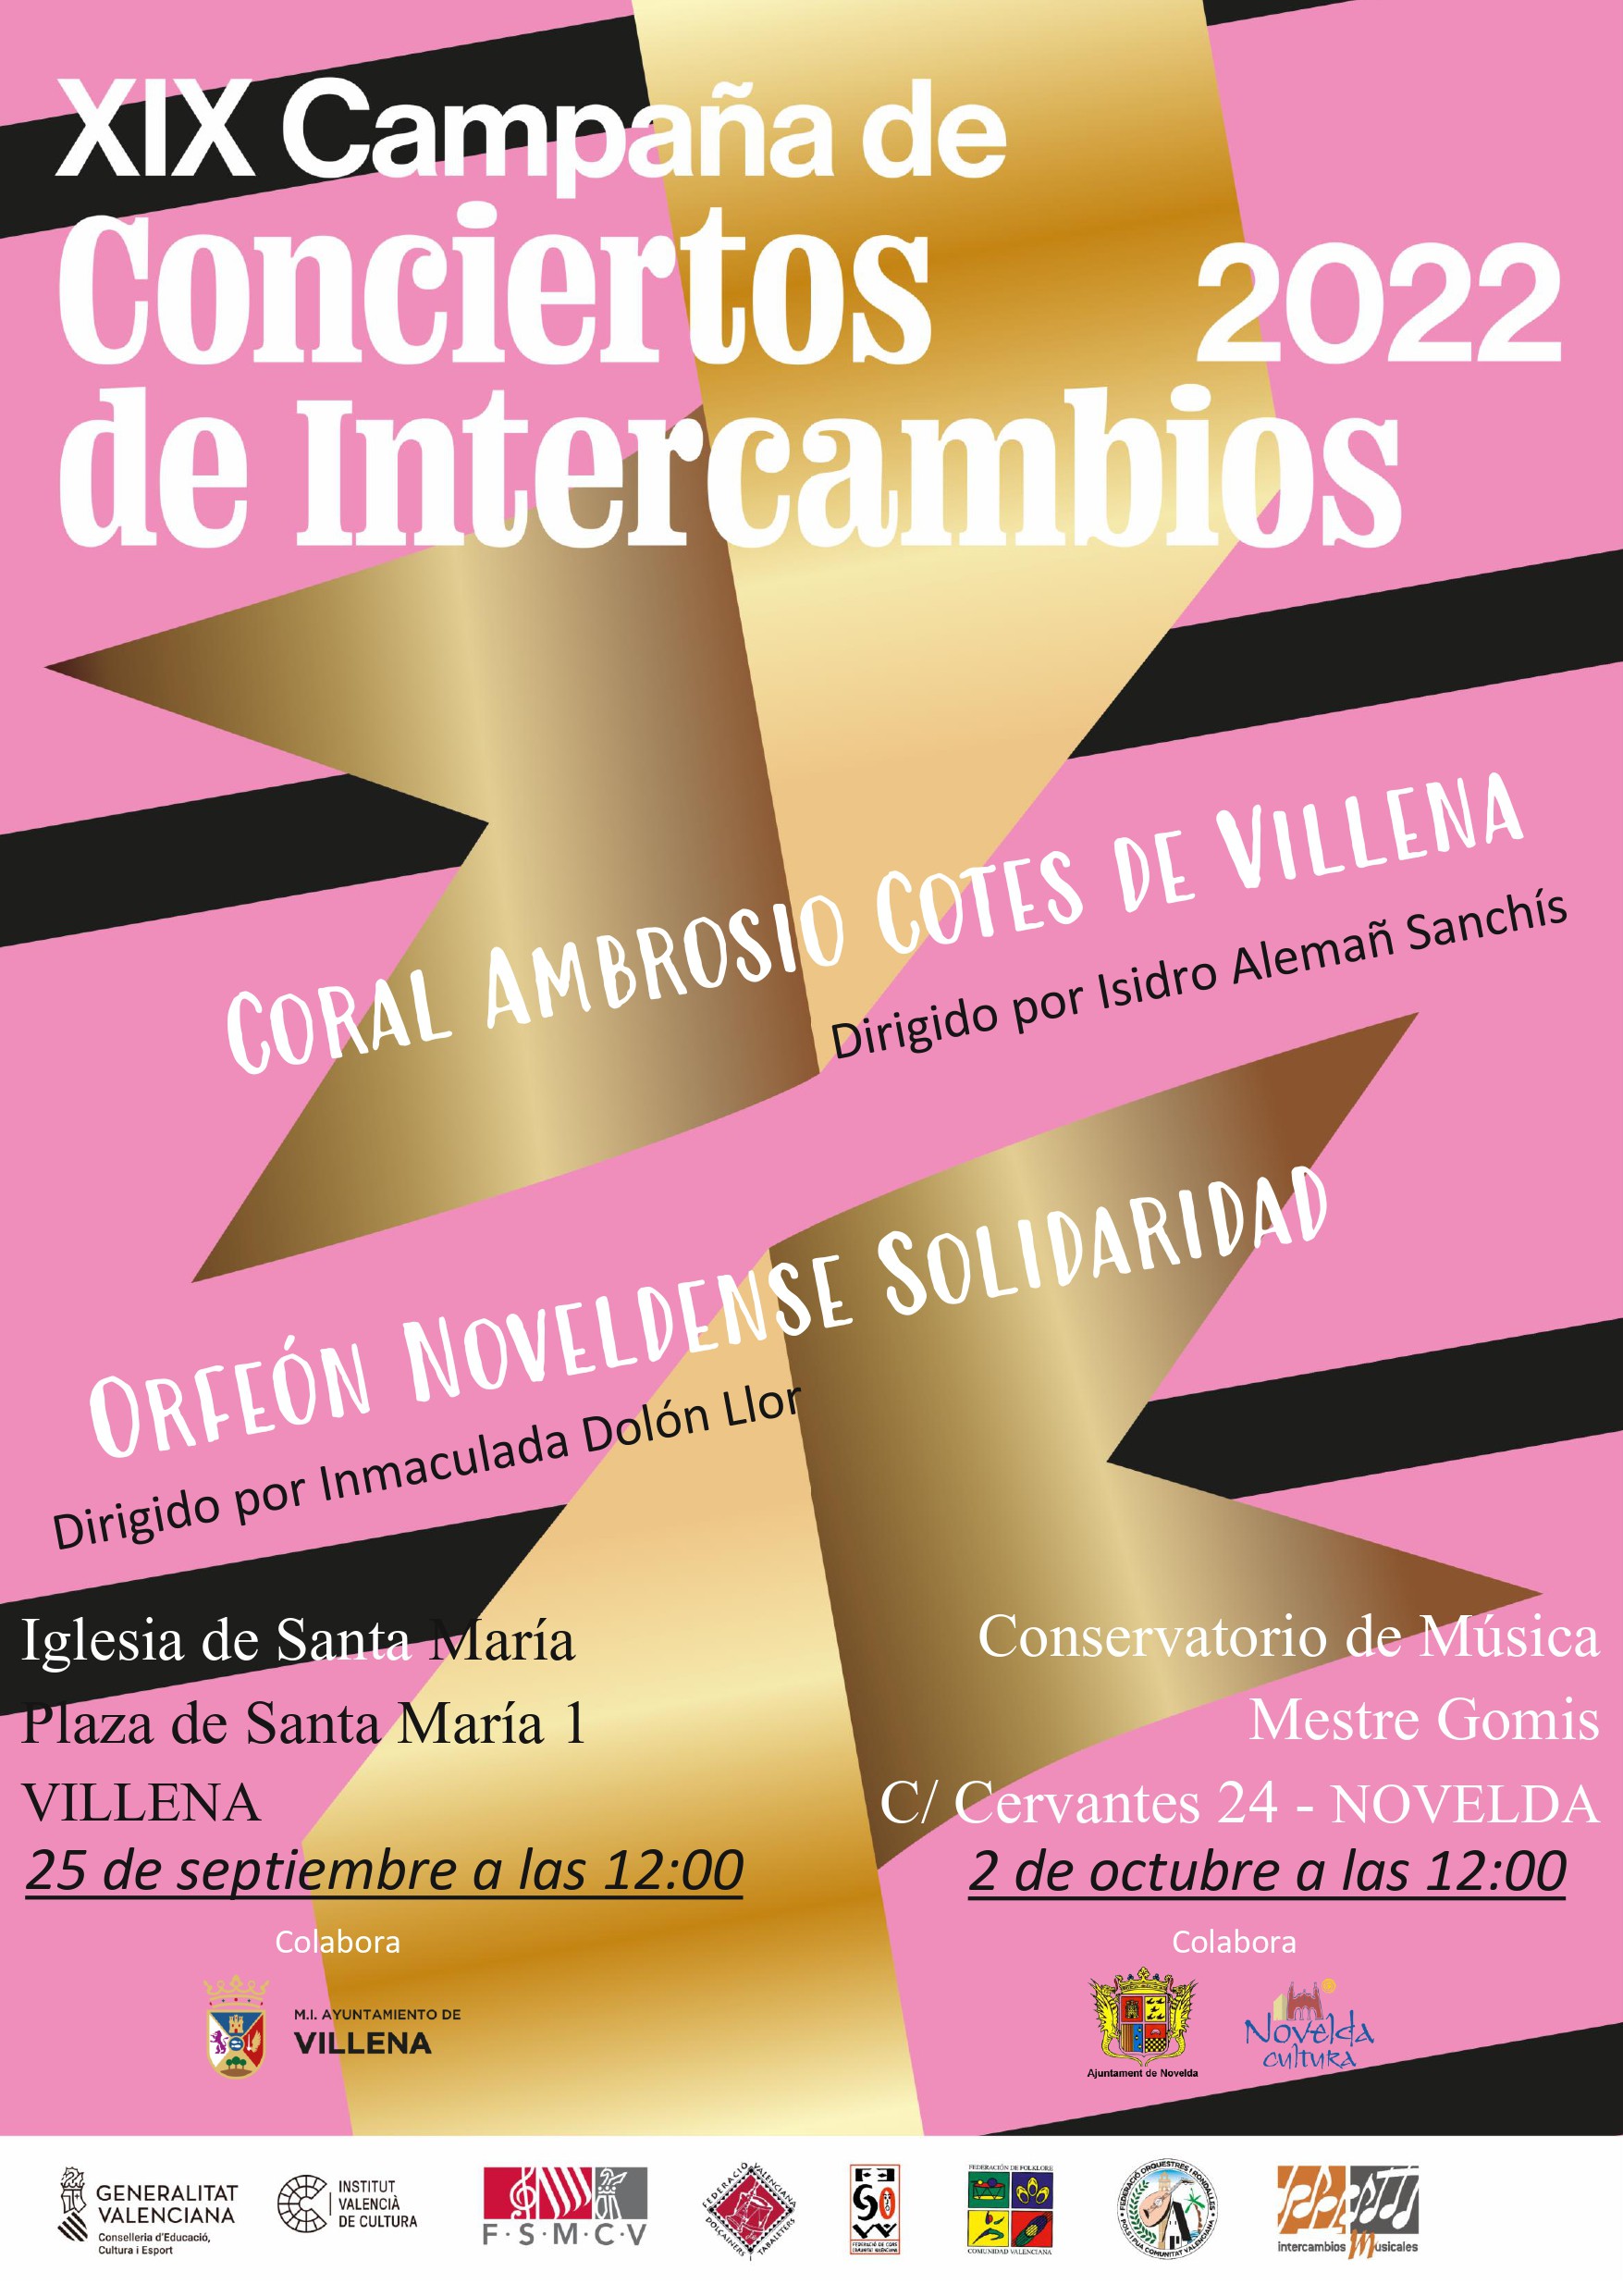 Ayuntamiento de Novelda 2022-cartel-concierto-intercambios XIX Campaña de Conciertos de Intercambio 